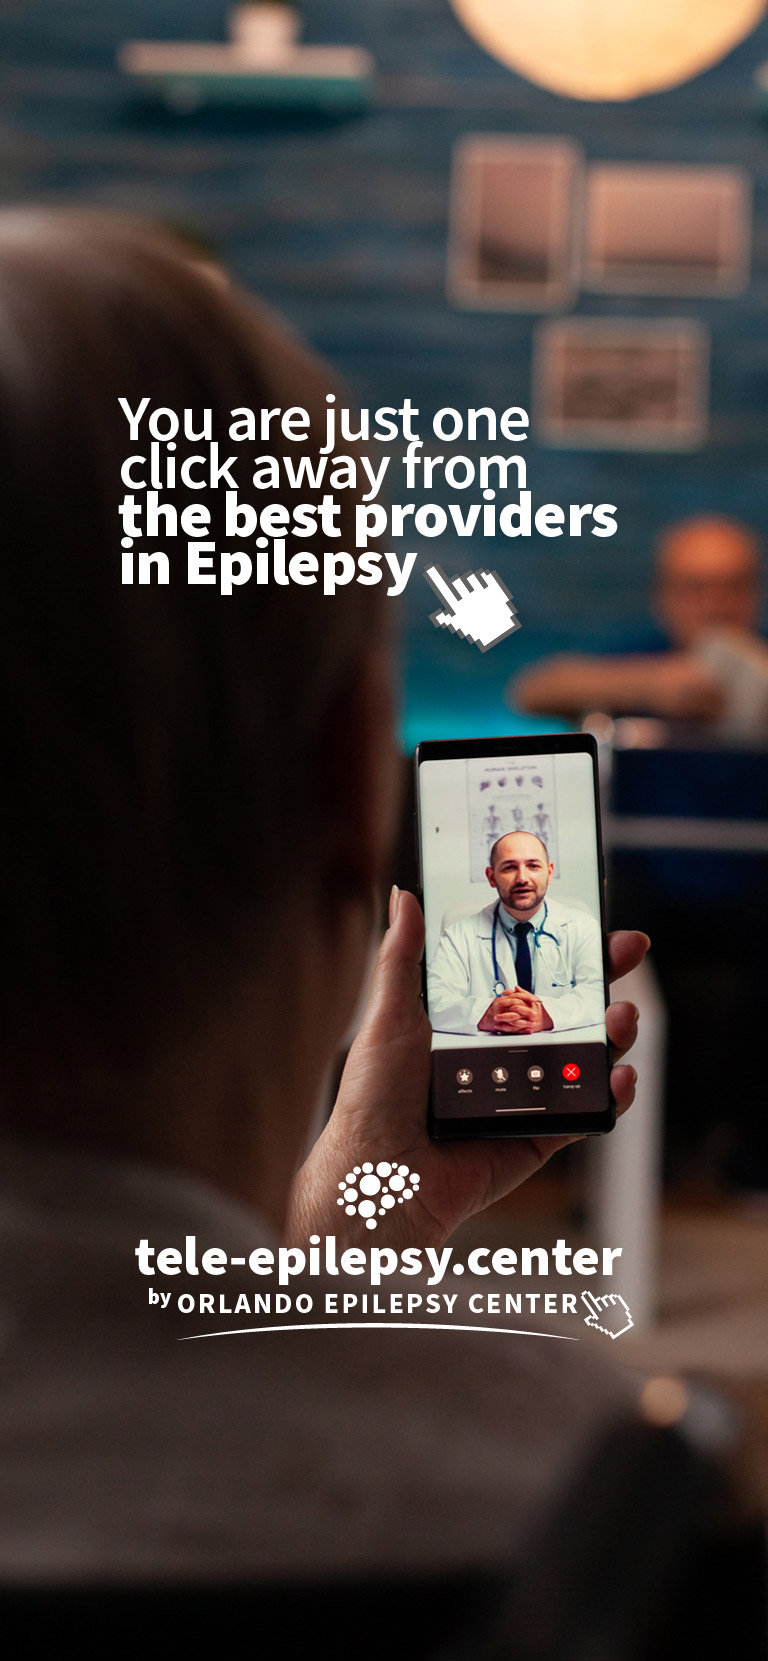 tele epilepsy center